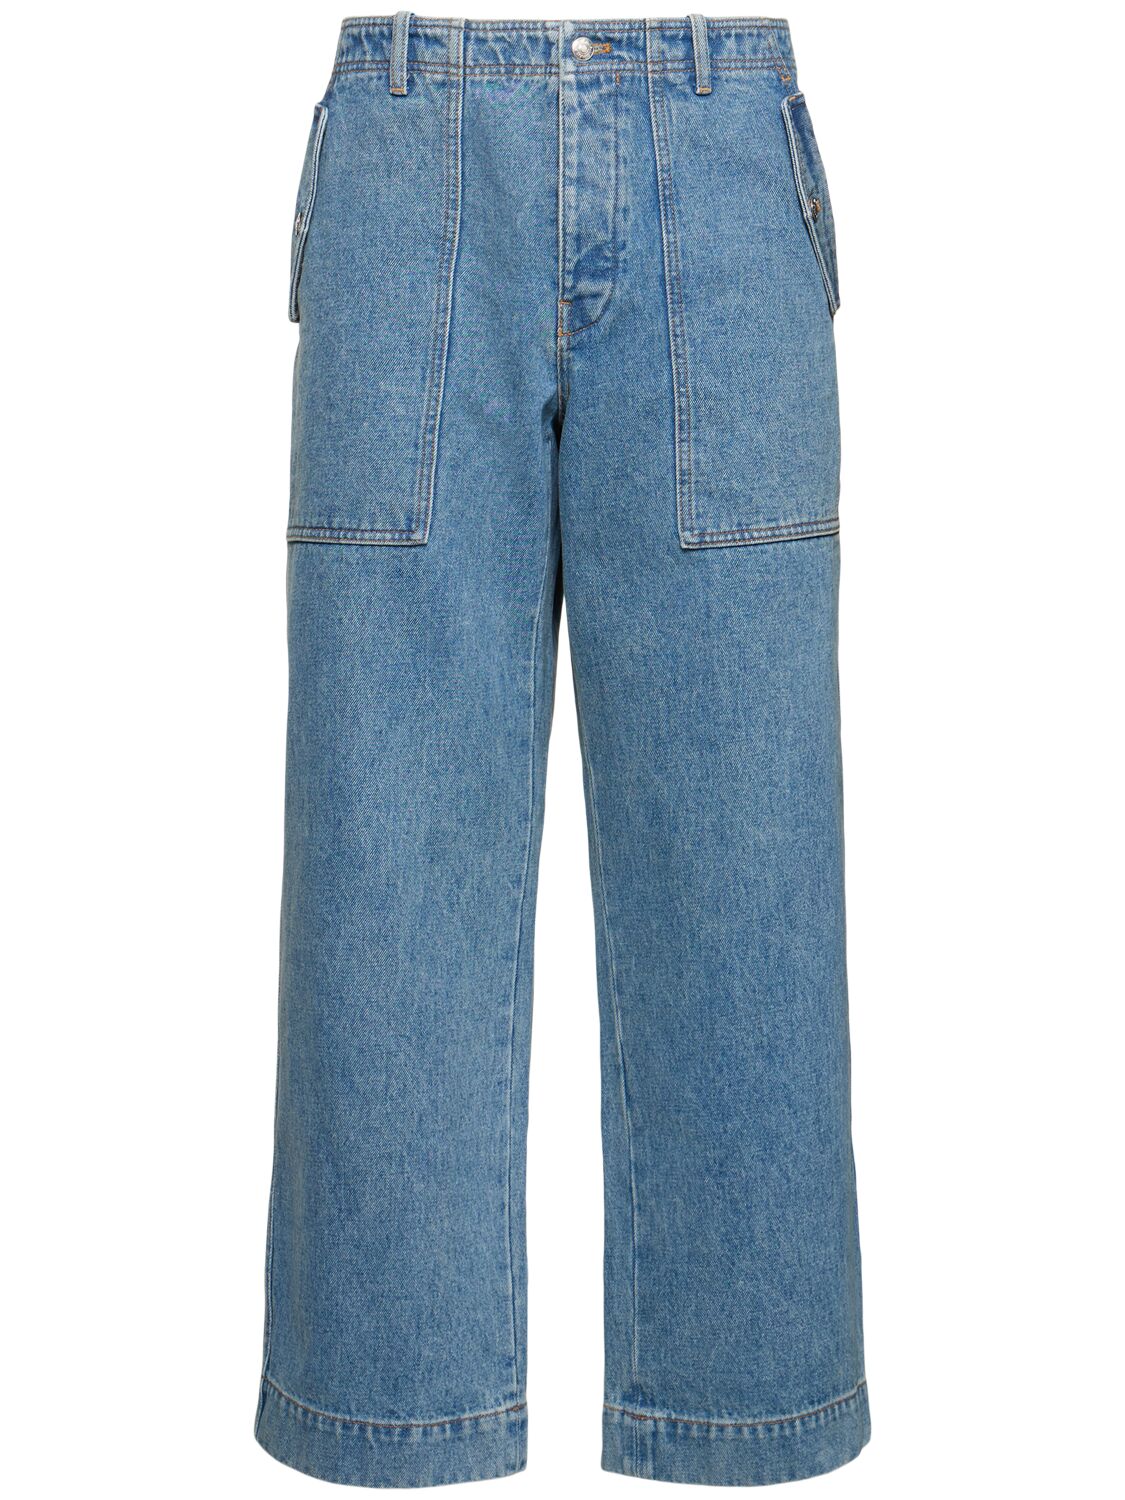 Maison Kitsuné Workwear Cotton Pants In Blue